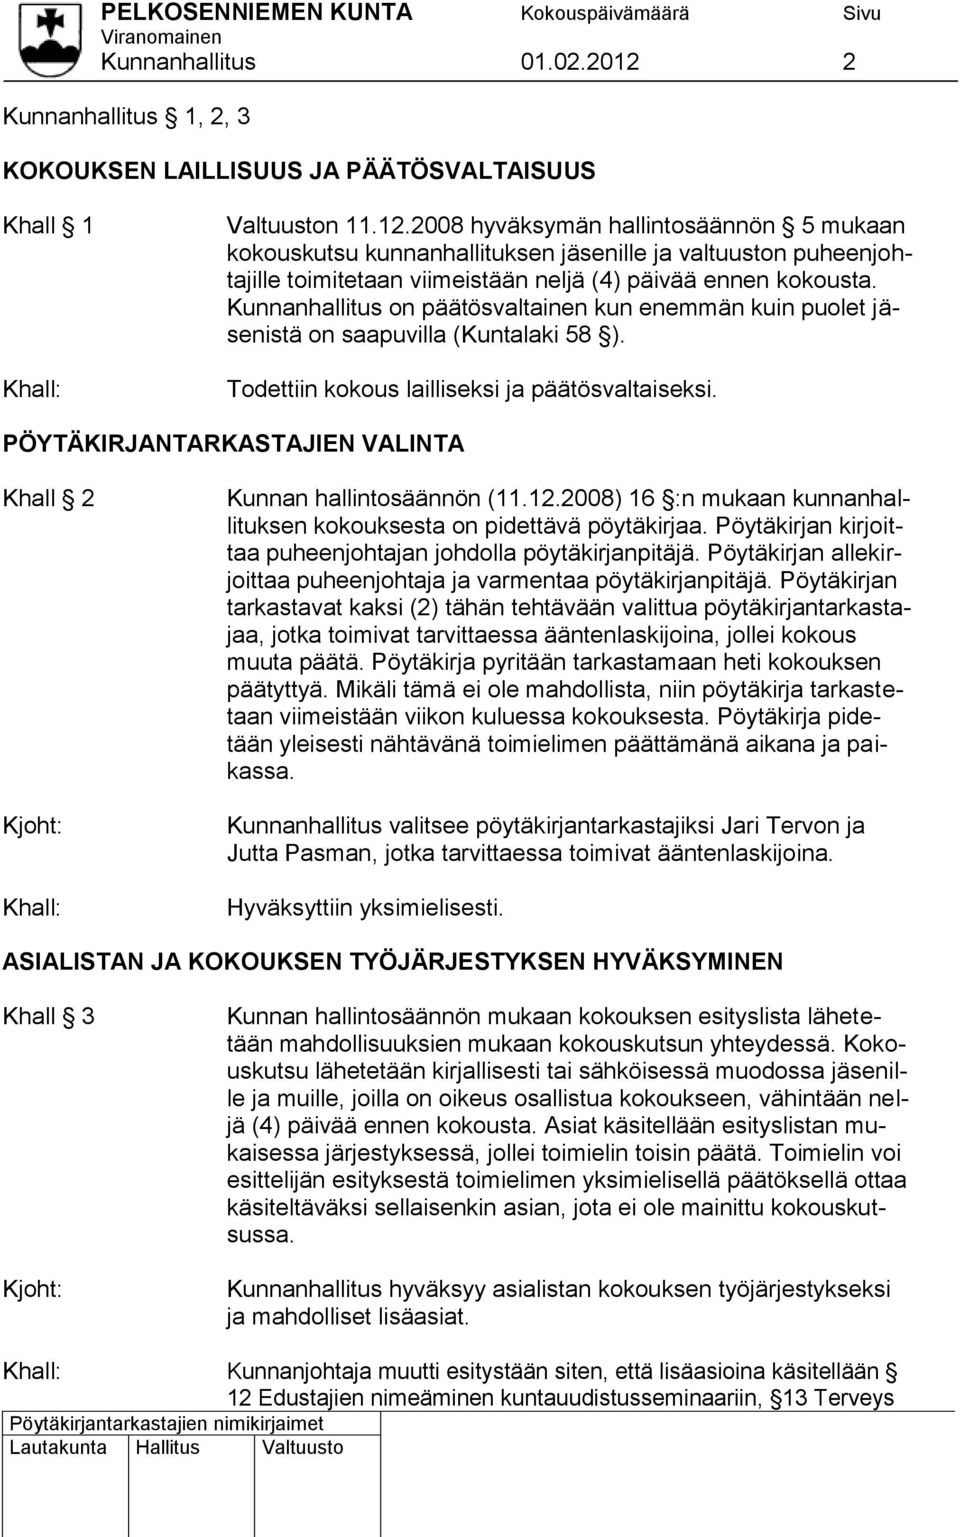 PÖYTÄKIRJANTARKASTAJIEN VALINTA Khall 2 Kunnan hallintosäännön (11.12.2008) 16 :n mukaan kunnanhallituksen kokouksesta on pidettävä pöytäkirjaa.